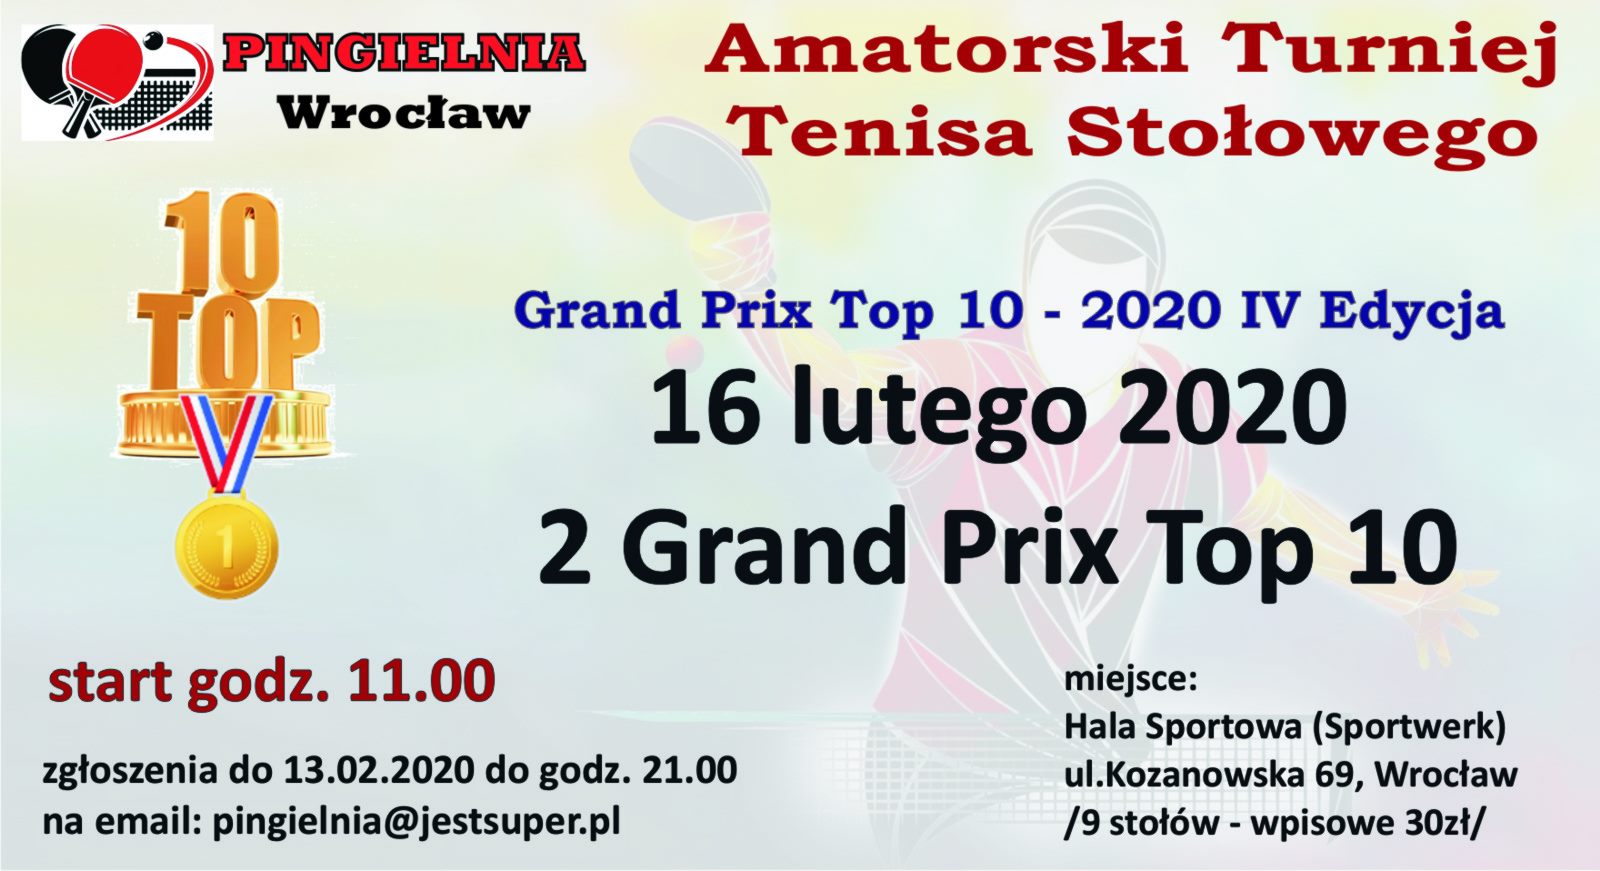 Plakat turnieju Amatorski Turniej Tenisa Stołowego (Pingielnia) - 2 turniej